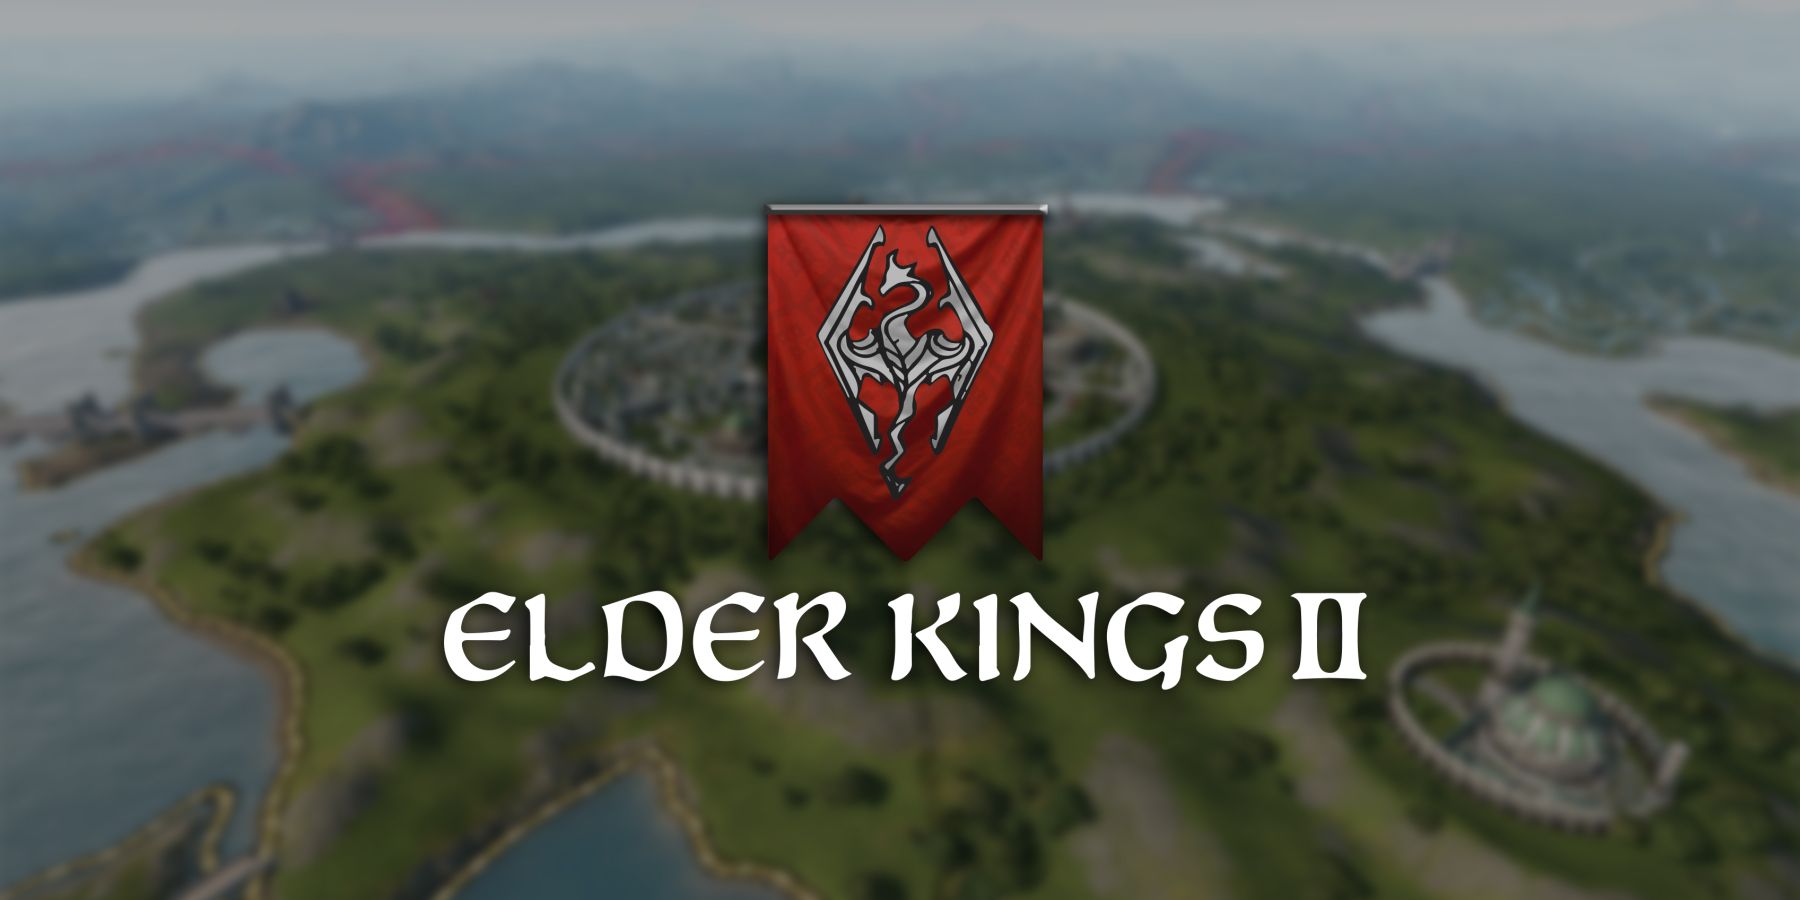 elder kings crusader kings 3 elder scrolls total conversion mod featured